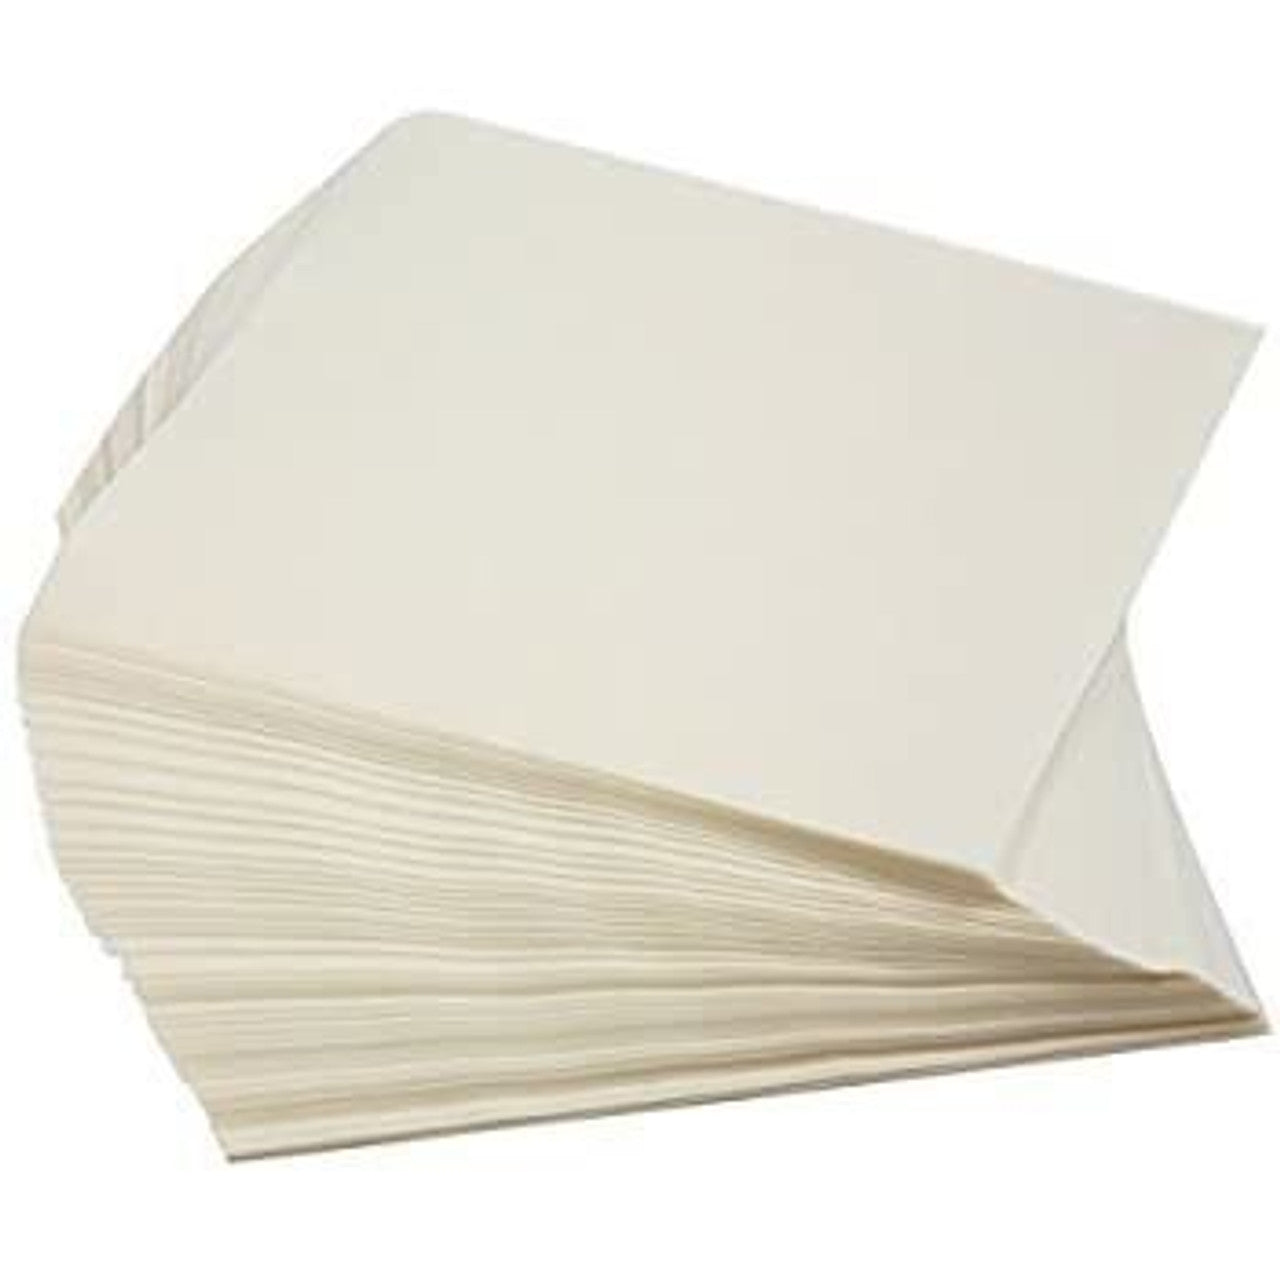 12x18 Wax Paper 2000/PK